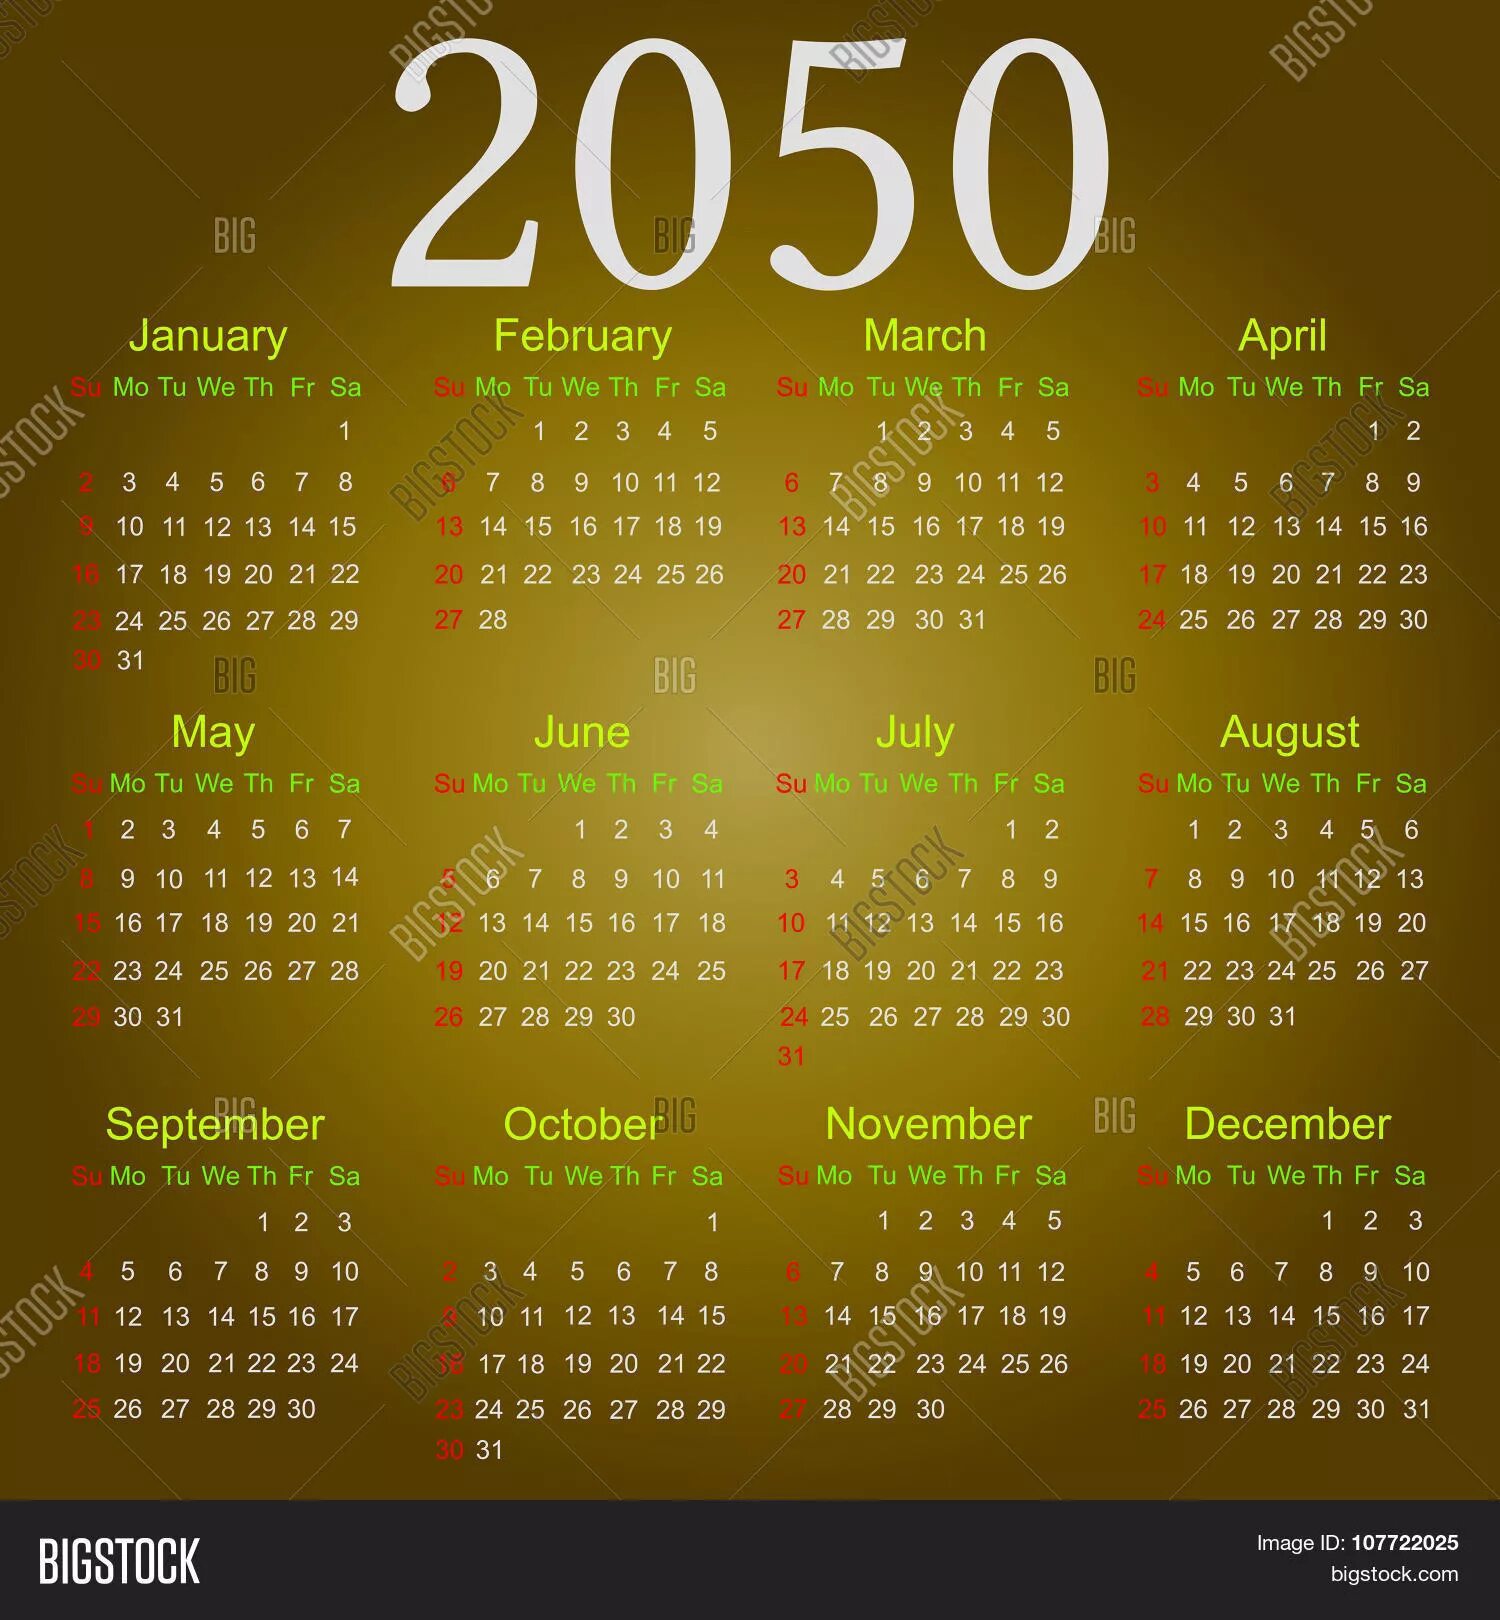 30 июля 2050 какой день недели